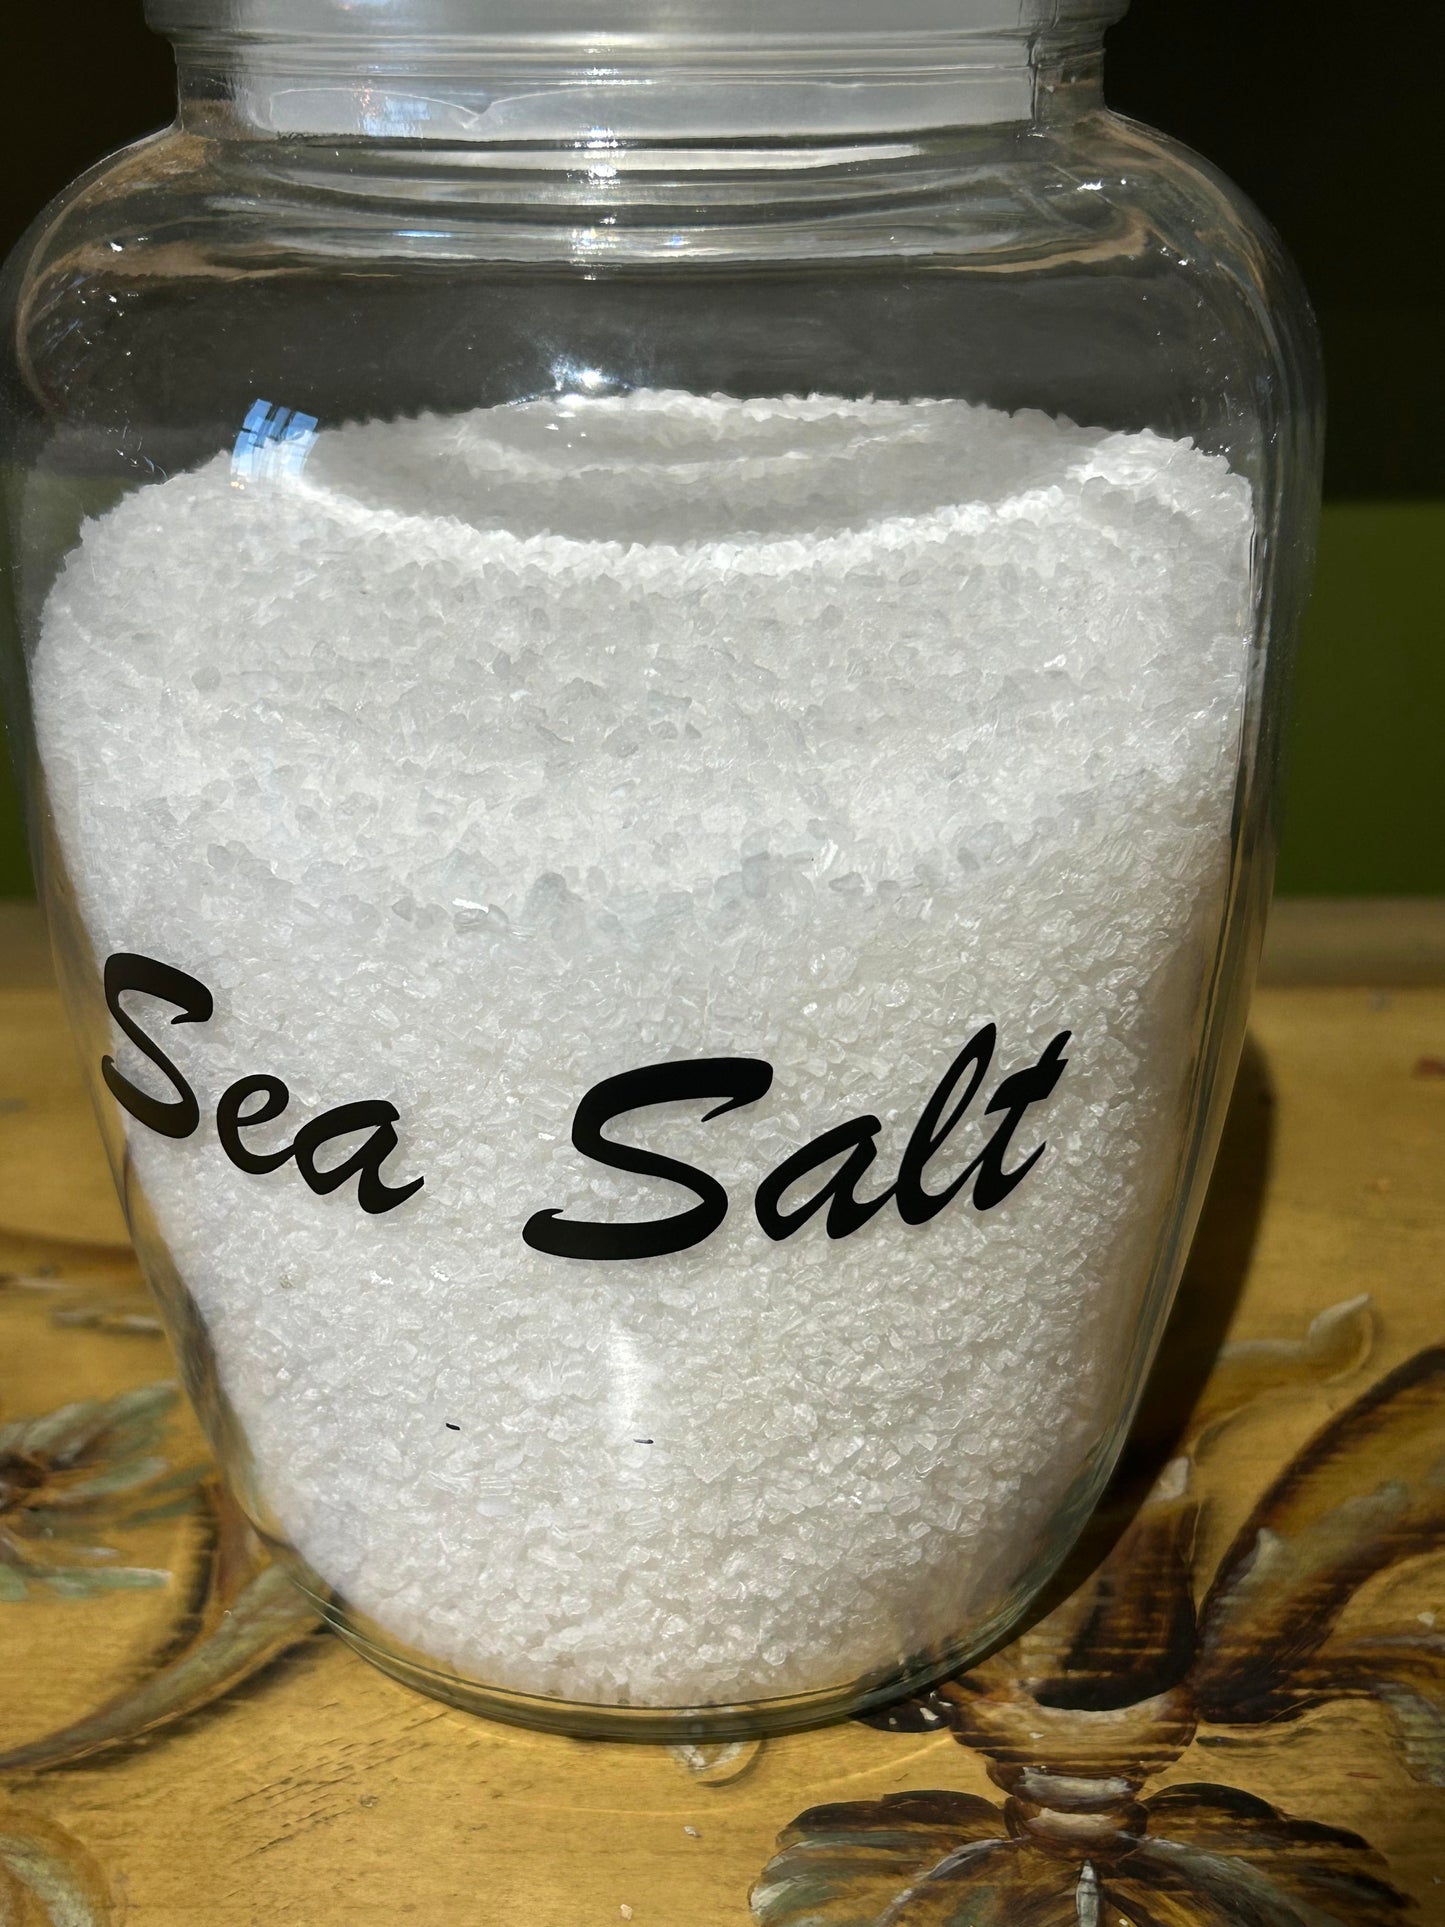 Sea salt